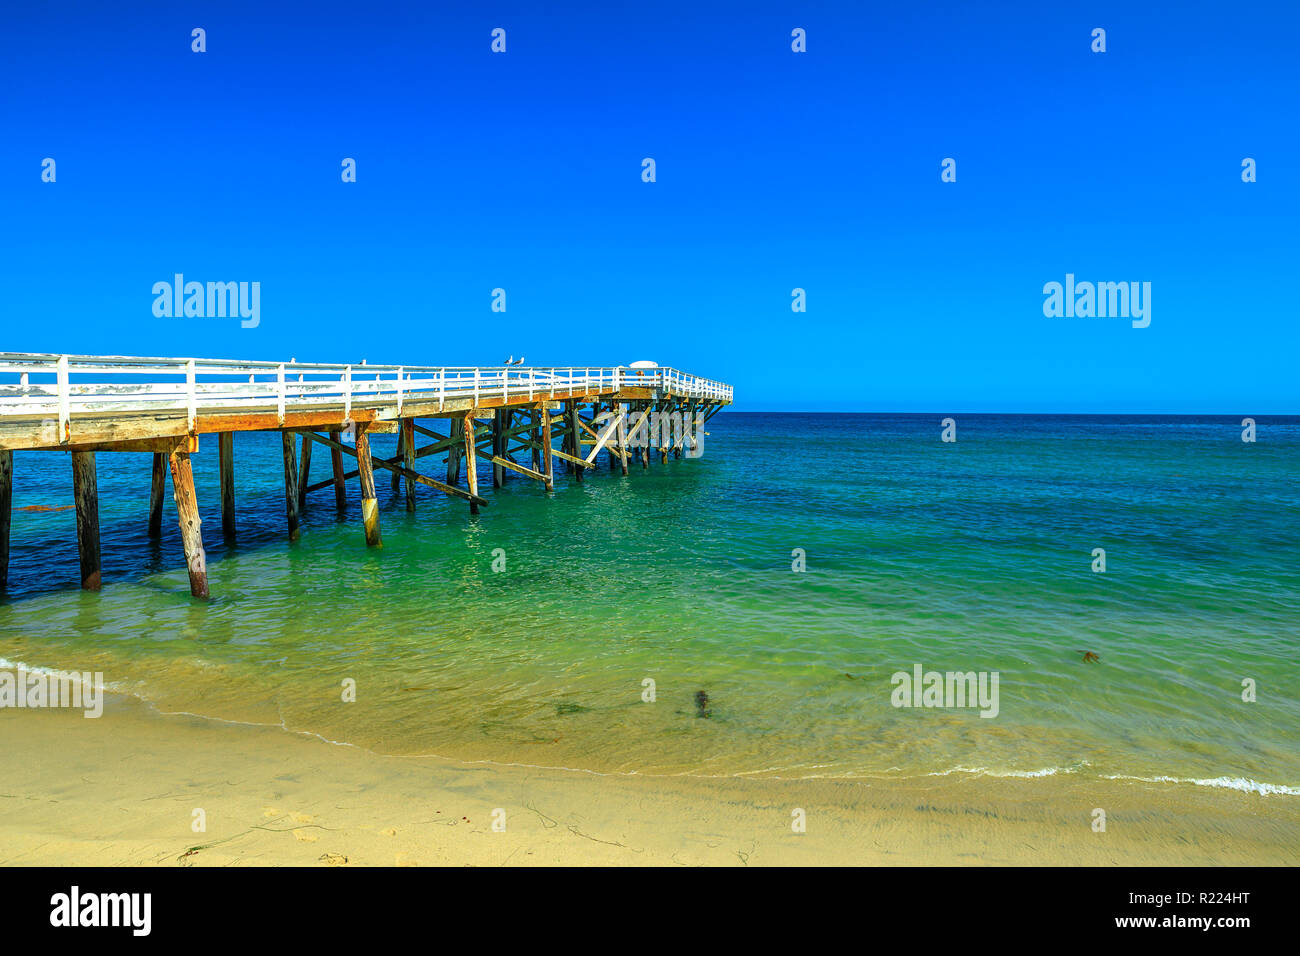 Paradise Cove Pier, un molo di legno in Paradise Cove Beach, Malibu, California, Stati Uniti. Wallpaper acque turchesi, copia dello spazio. Lussuosa destinazione di viaggio sulla costa del Pacifico. Summer blue sky. Foto Stock